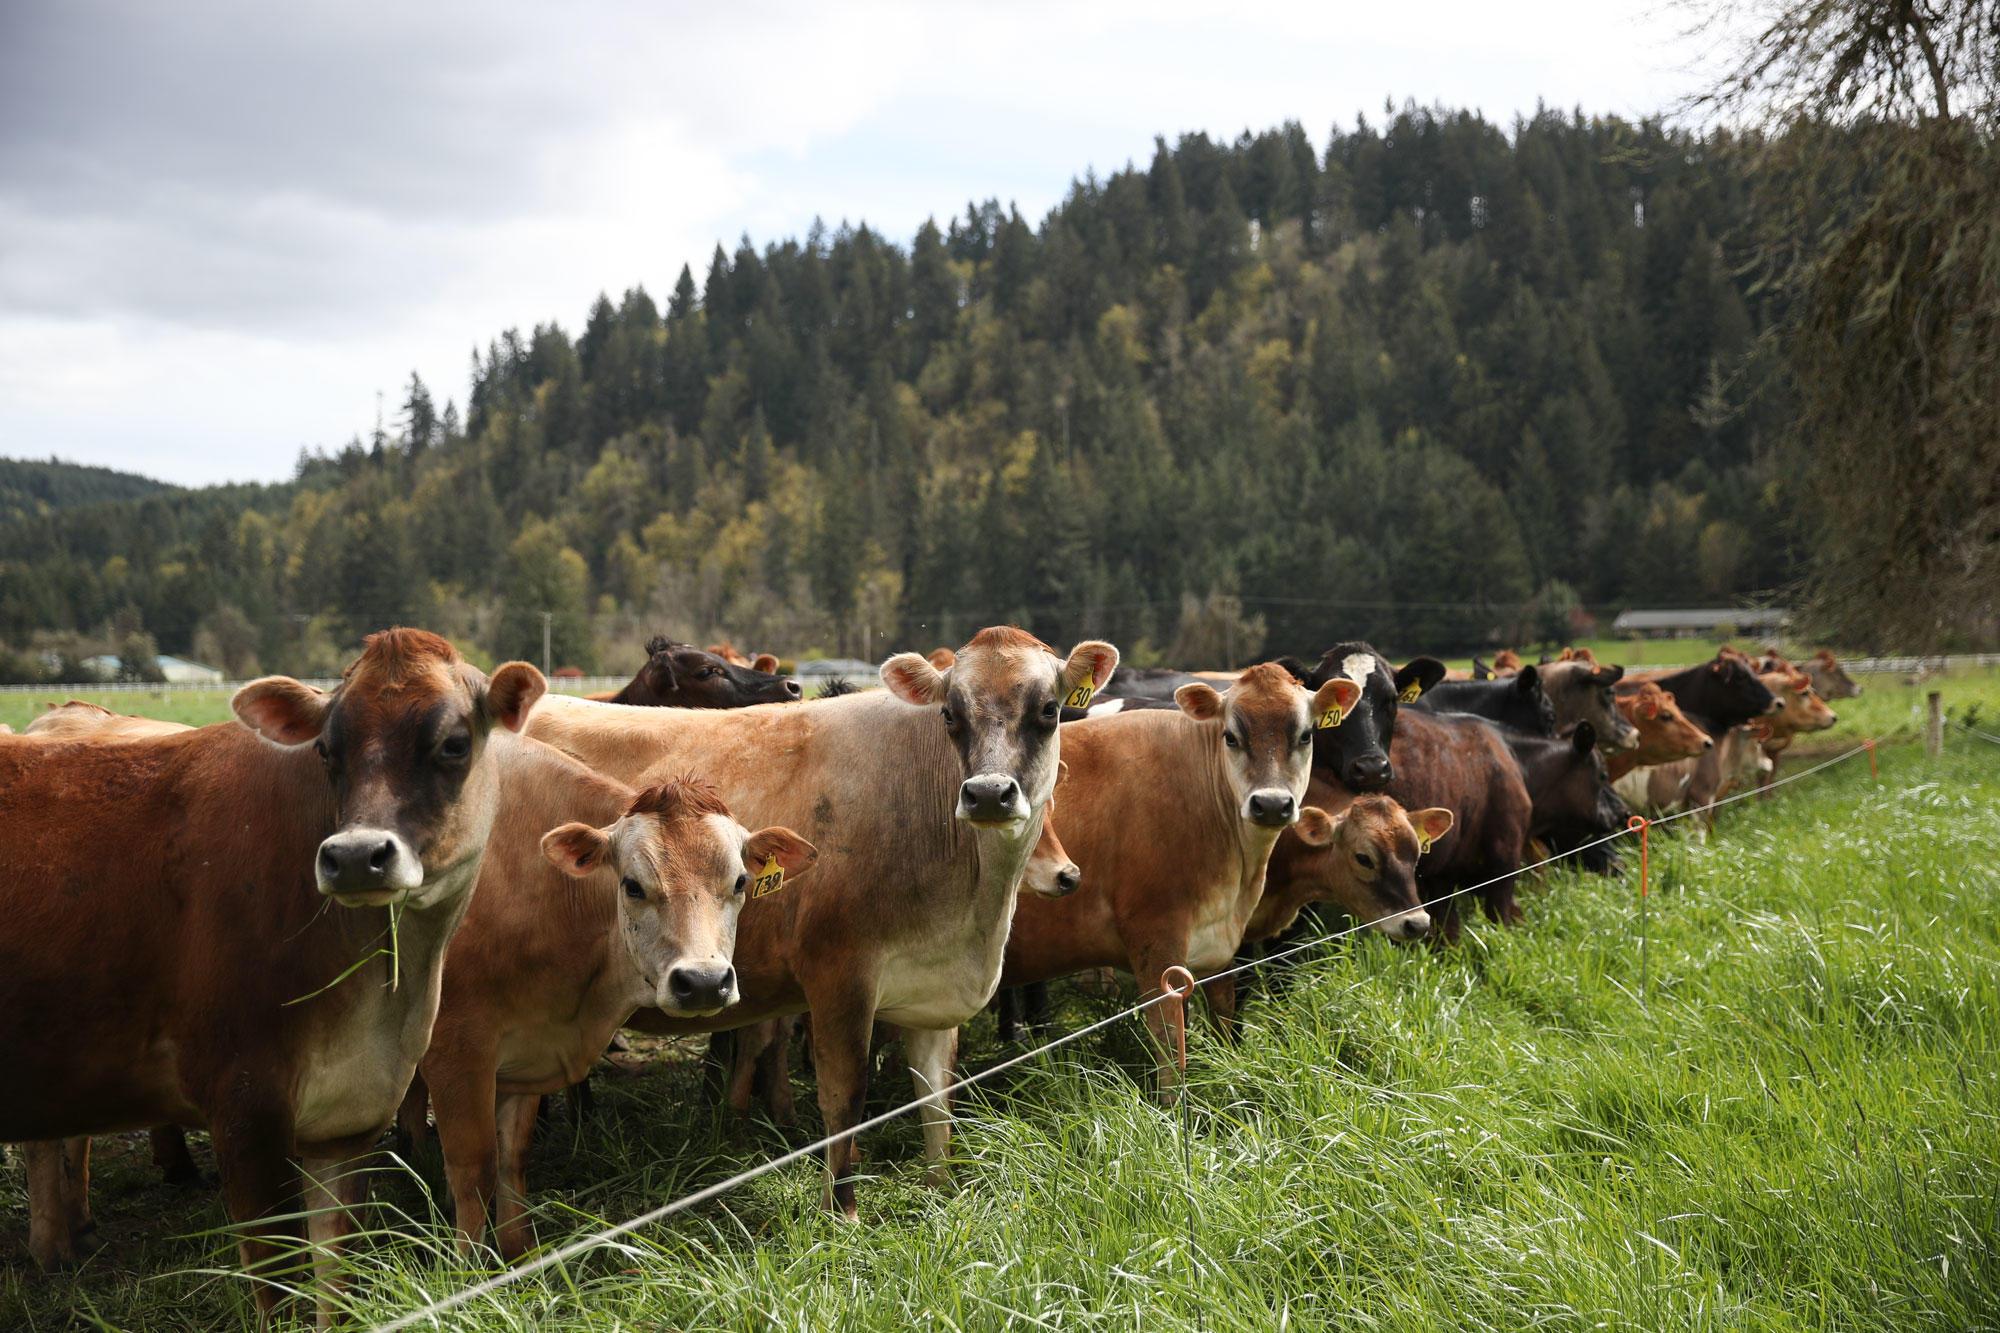 Cows on a dairy farm in Western Oregon.